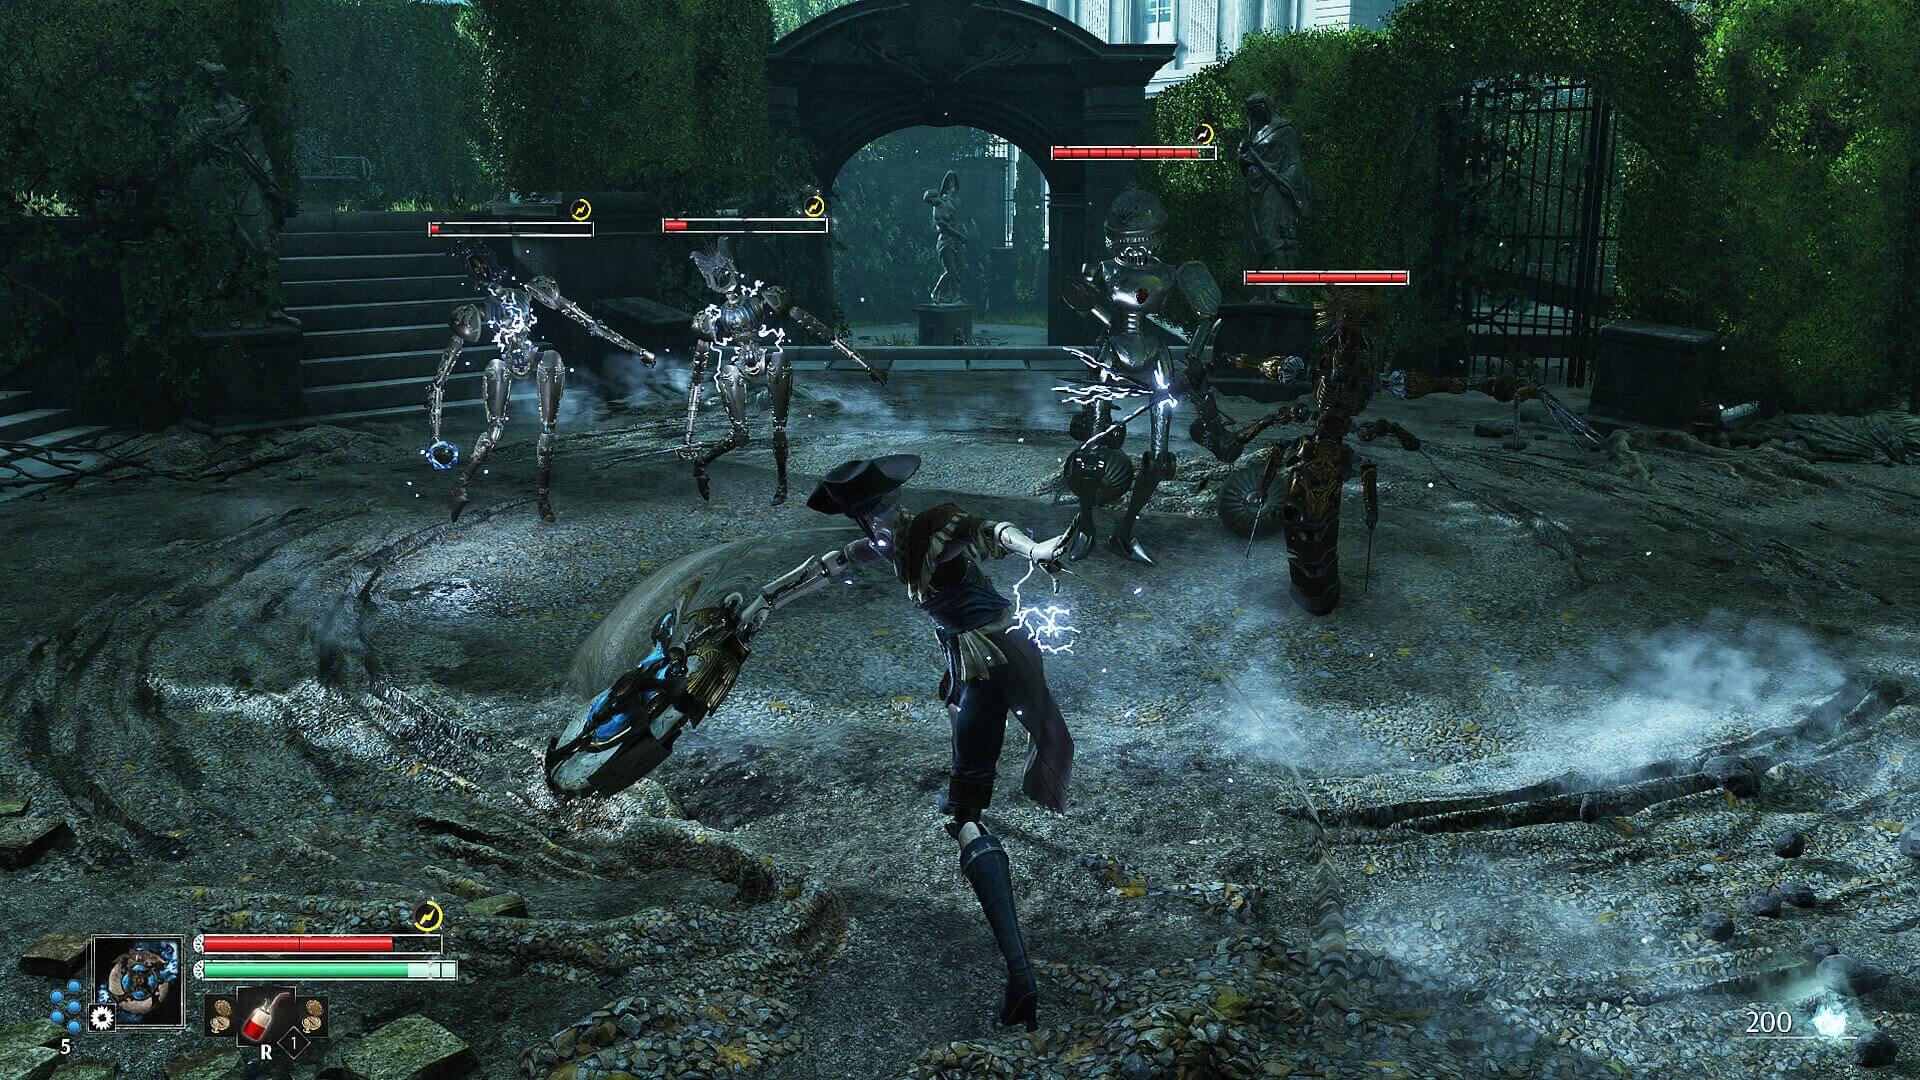 Aegis takes on multiple enemies in an ornate Paris courtyard in Steelrising